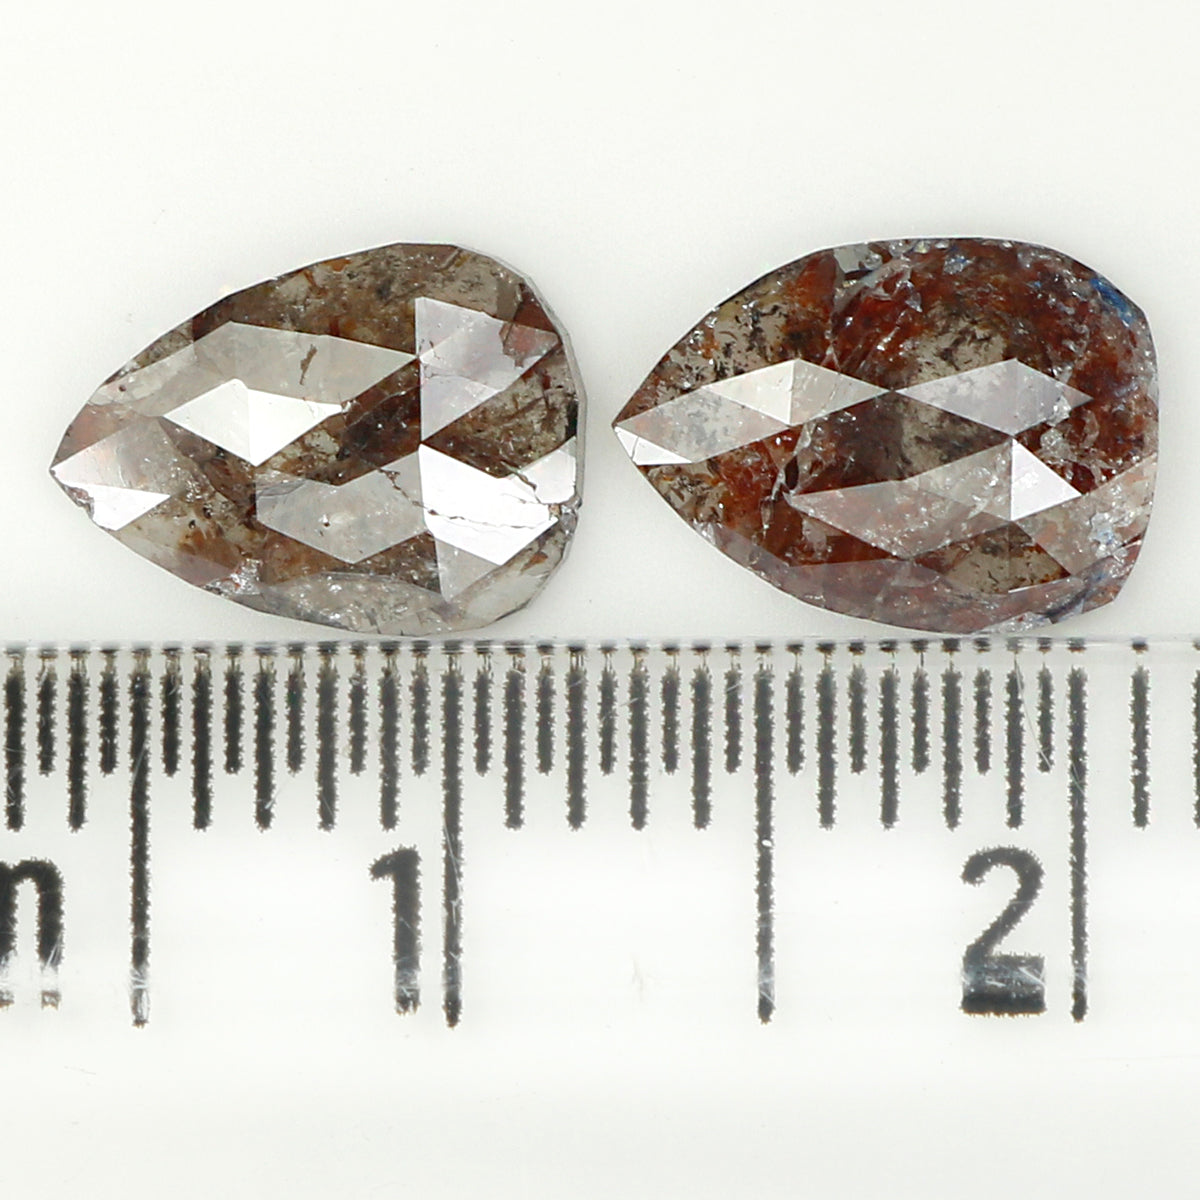 2.06 CT Natural Loose Diamond, Pear Pair Diamond, Brown Pair Diamond, Rustic Diamond, Pear Cut Diamond, Fancy Color Diamond, KDL6875